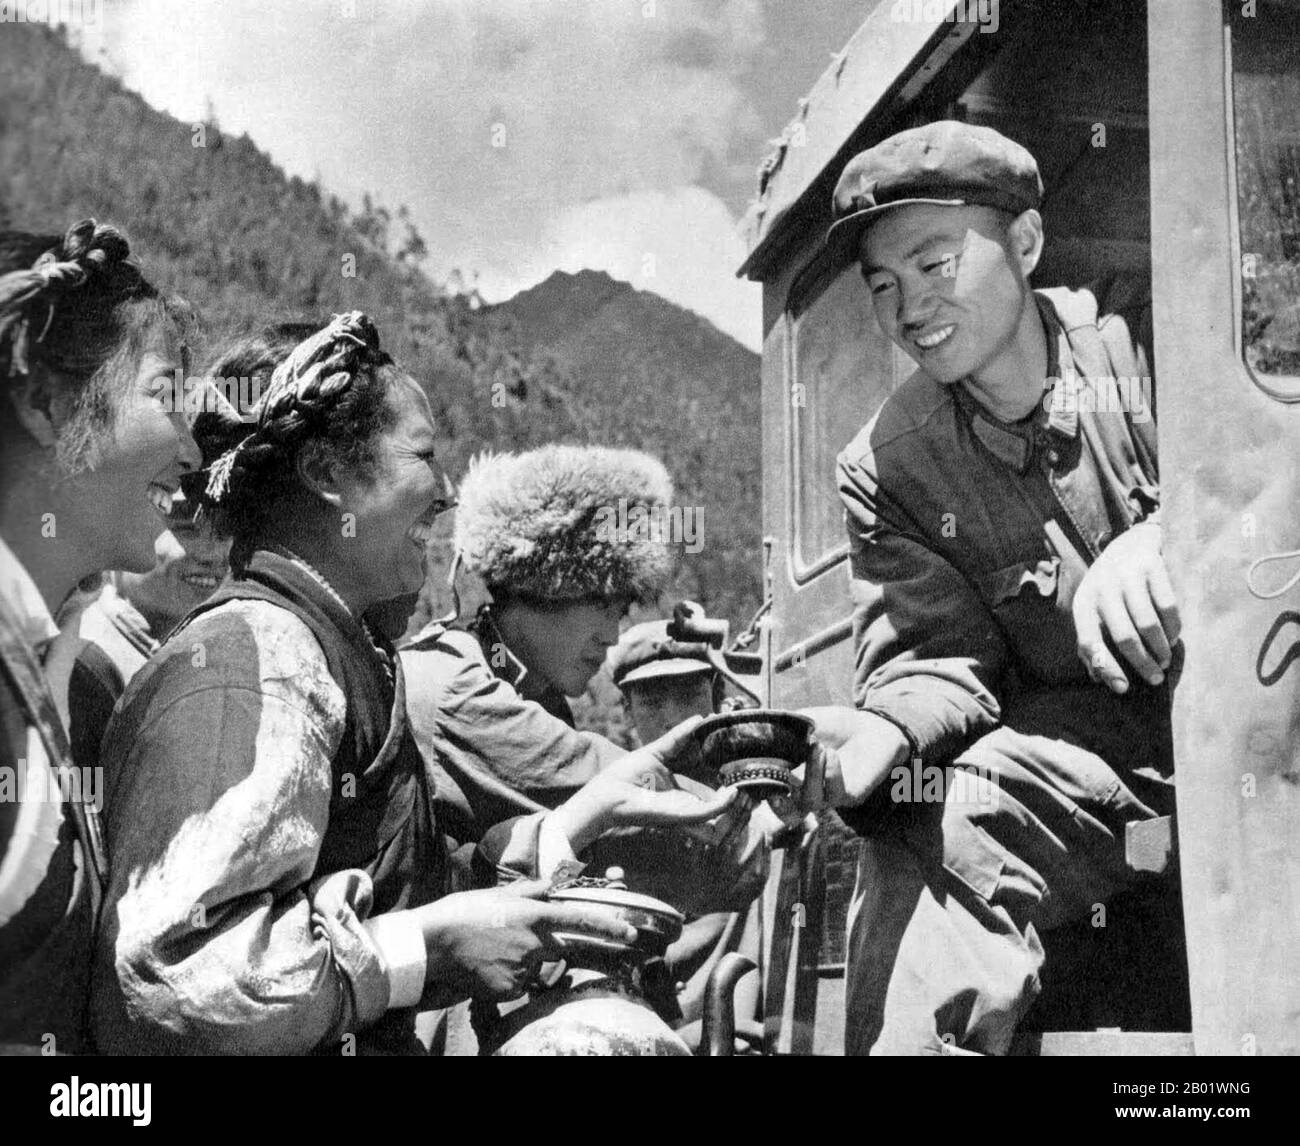 Cina/Tibet: Immagine propagandistica cinese di tibetani felici che offrono tè al burro a un autista di trattori dell'Esercito Popolare di Liberazione (PLA) Han al tempo della grande Rivoluzione culturale Proletaria (1966-1976). La Tea Horse Road (Cha ma Dao) era una rete di sentieri per carovane mulattiere che si snodavano tra le montagne dello Yunnan, del Sichuan e del Tibet nel sud-ovest della Cina. A volte viene anche chiamata Southern Silk Road e Ancient Tea and Horse Road. Circa mille anni fa, l'antica via del tè era un collegamento commerciale dallo Yunnan, una delle prime regioni produttrici di tè, all'India attraverso la Birmania. Foto Stock